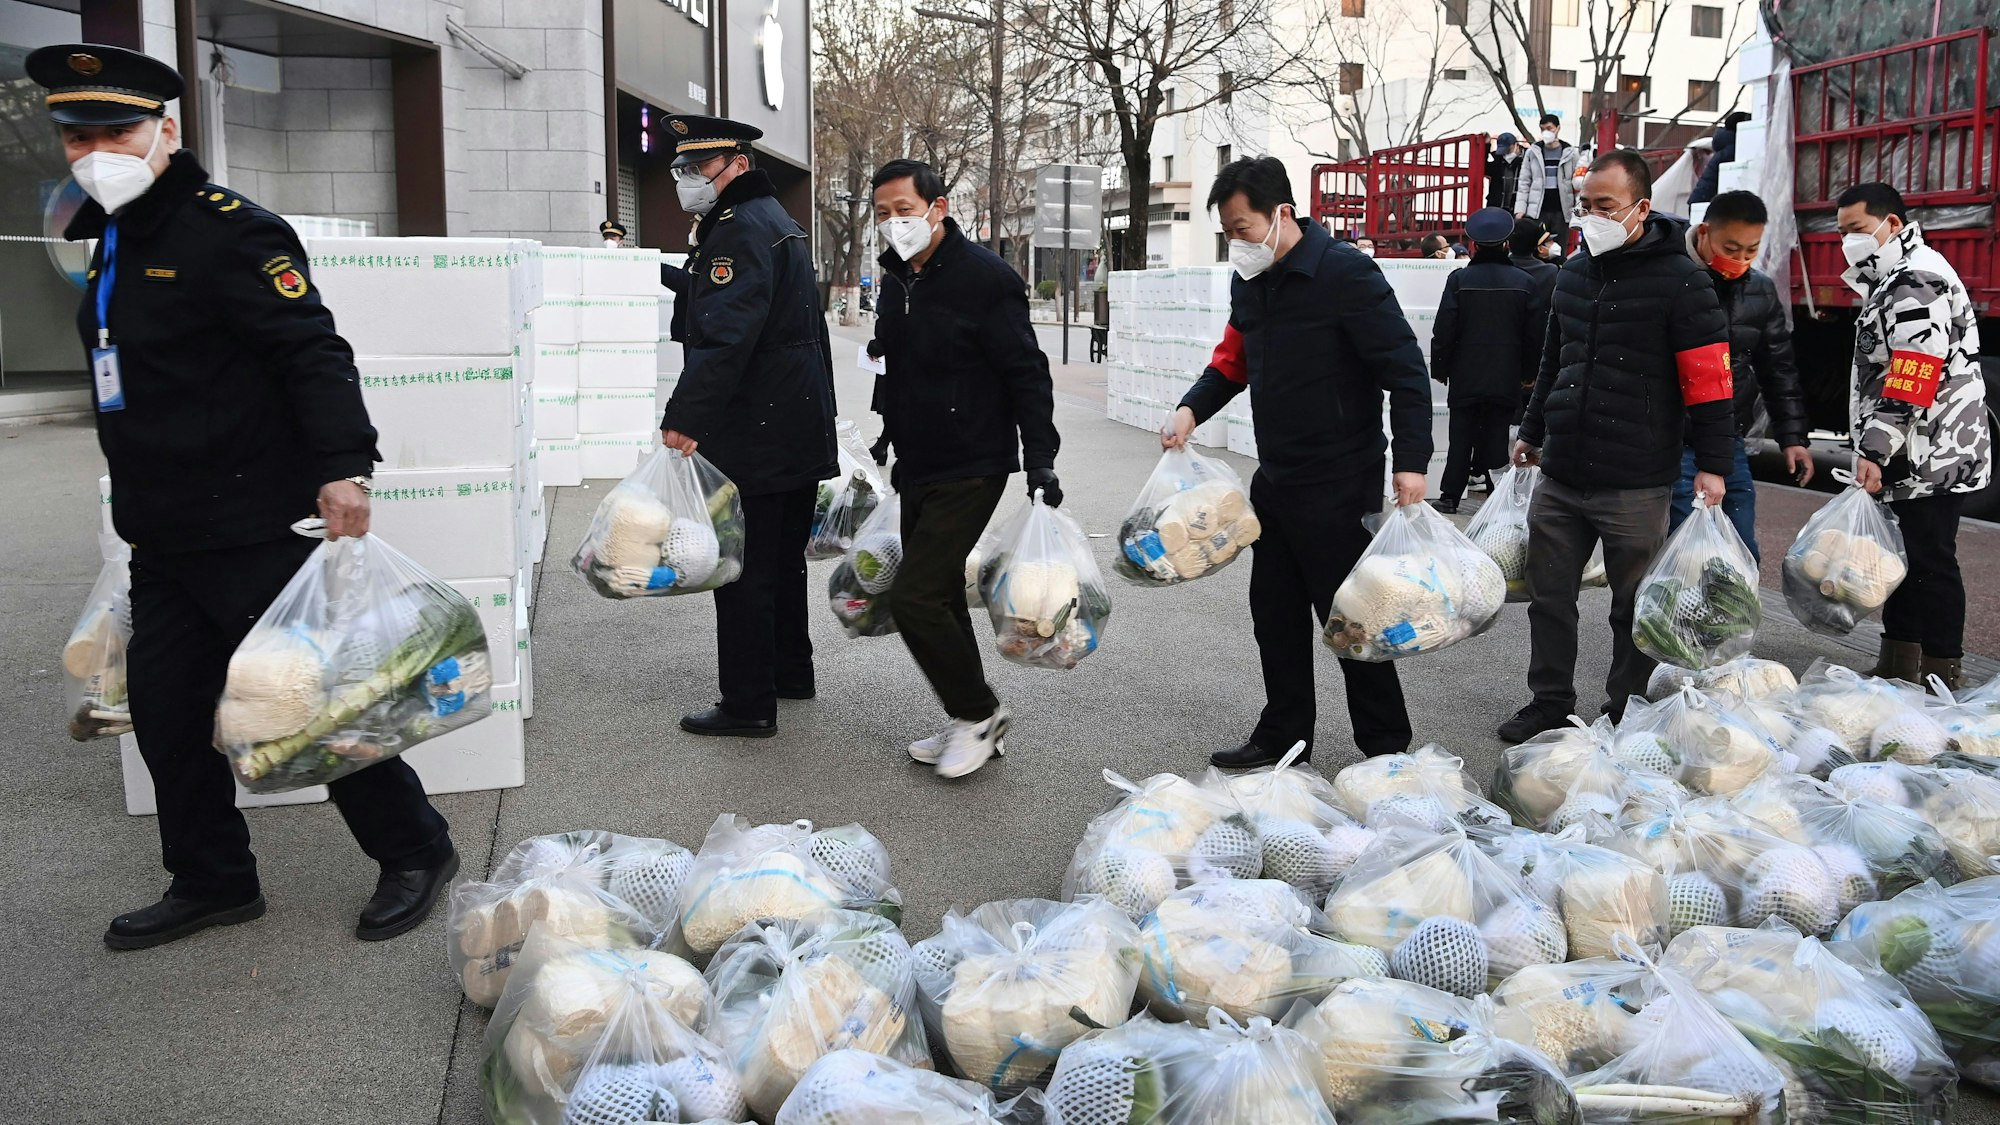 Nichts geht mehr in Xian, Menschen dürfen nicht mehr in Supermärkten einkaufen gehen. Stattdessen werden die Bewohner von behördlichen Mitarbeitern mit Lebensmitteln beliefert.